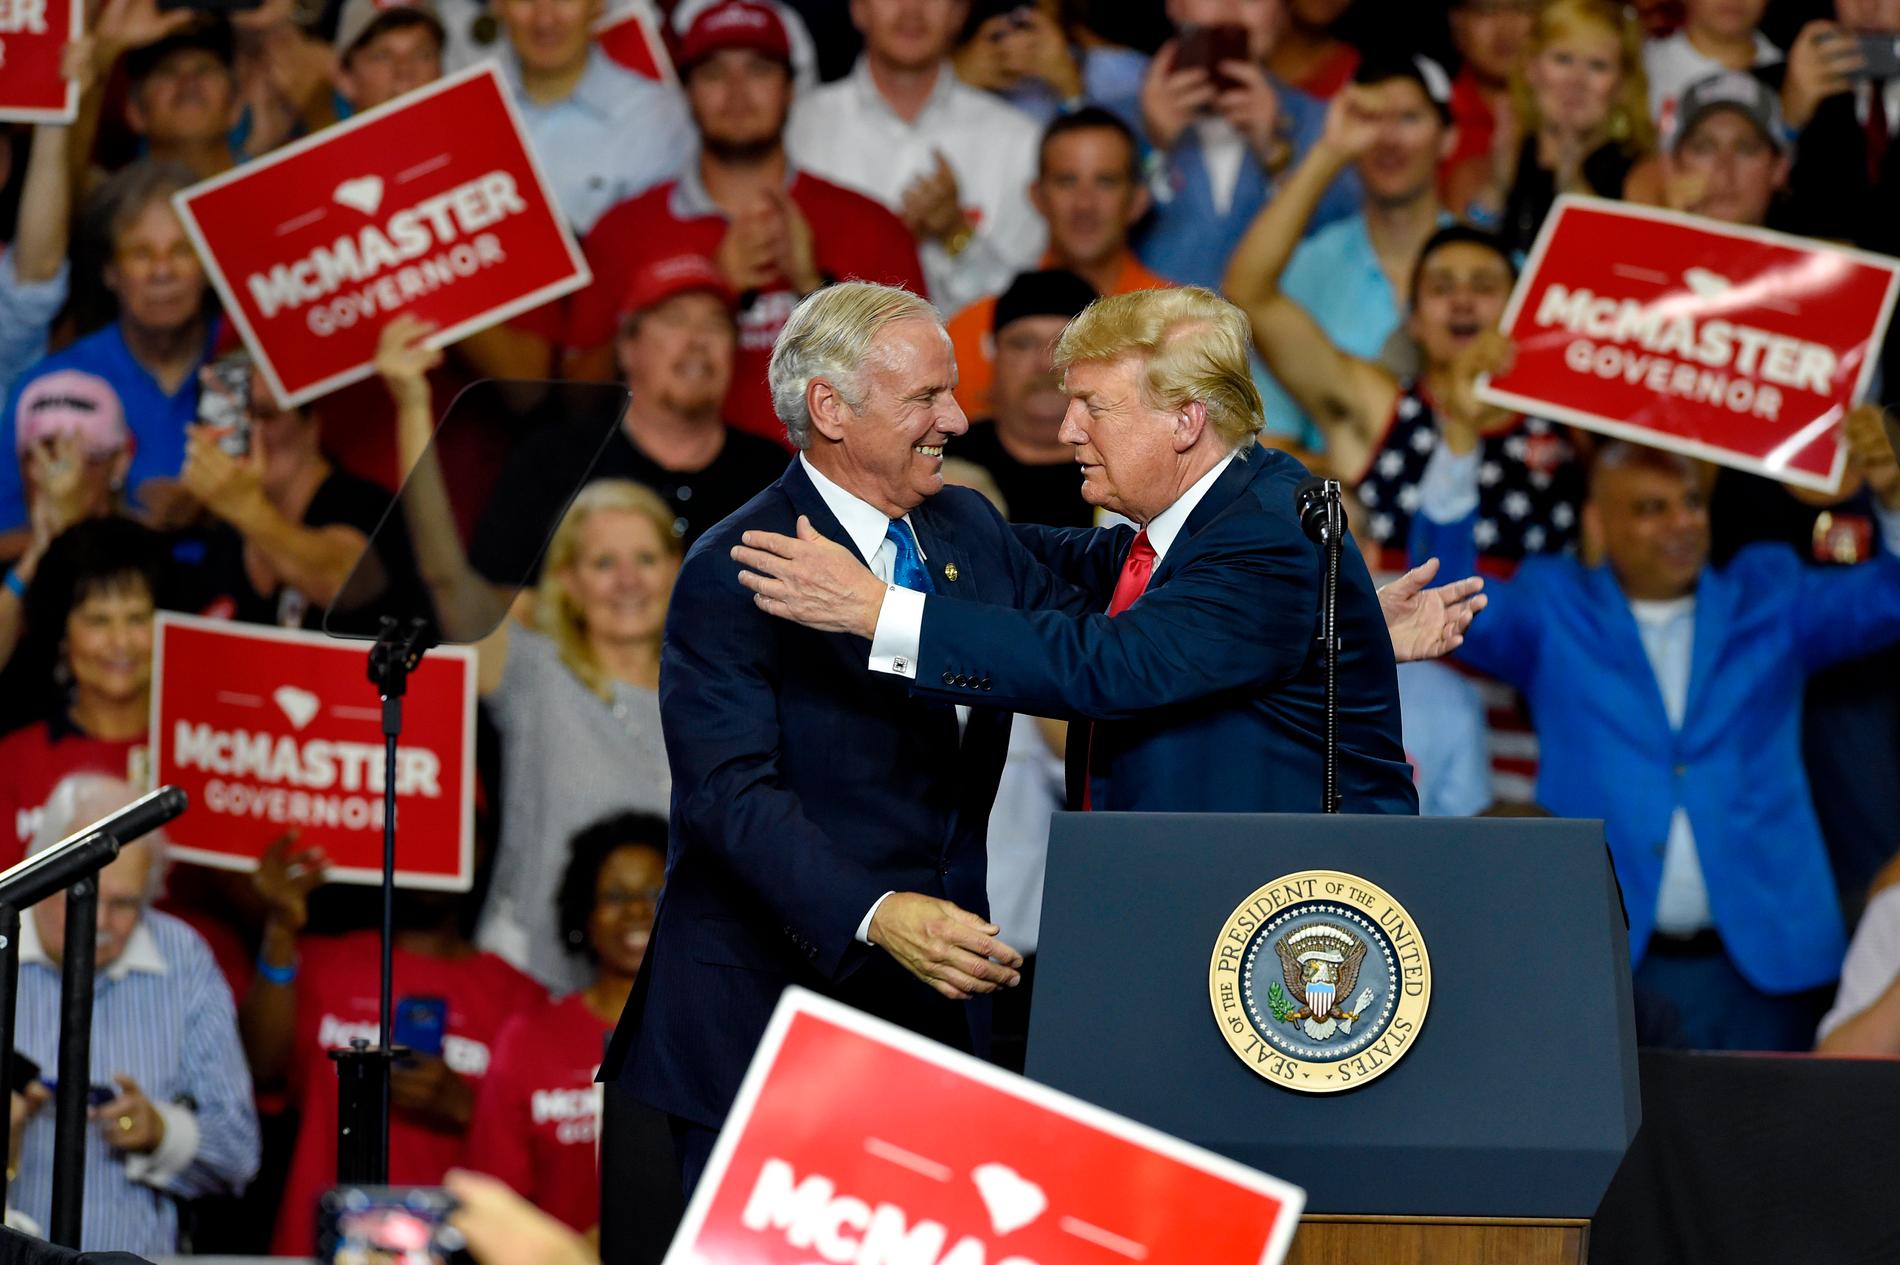 President Donald Trump tillsammans med South Carolinas republikanske guvernör Henry McMaster vid ett kampanjmöte. McMaster har utmanats av andra republikaner inför höstens omval.